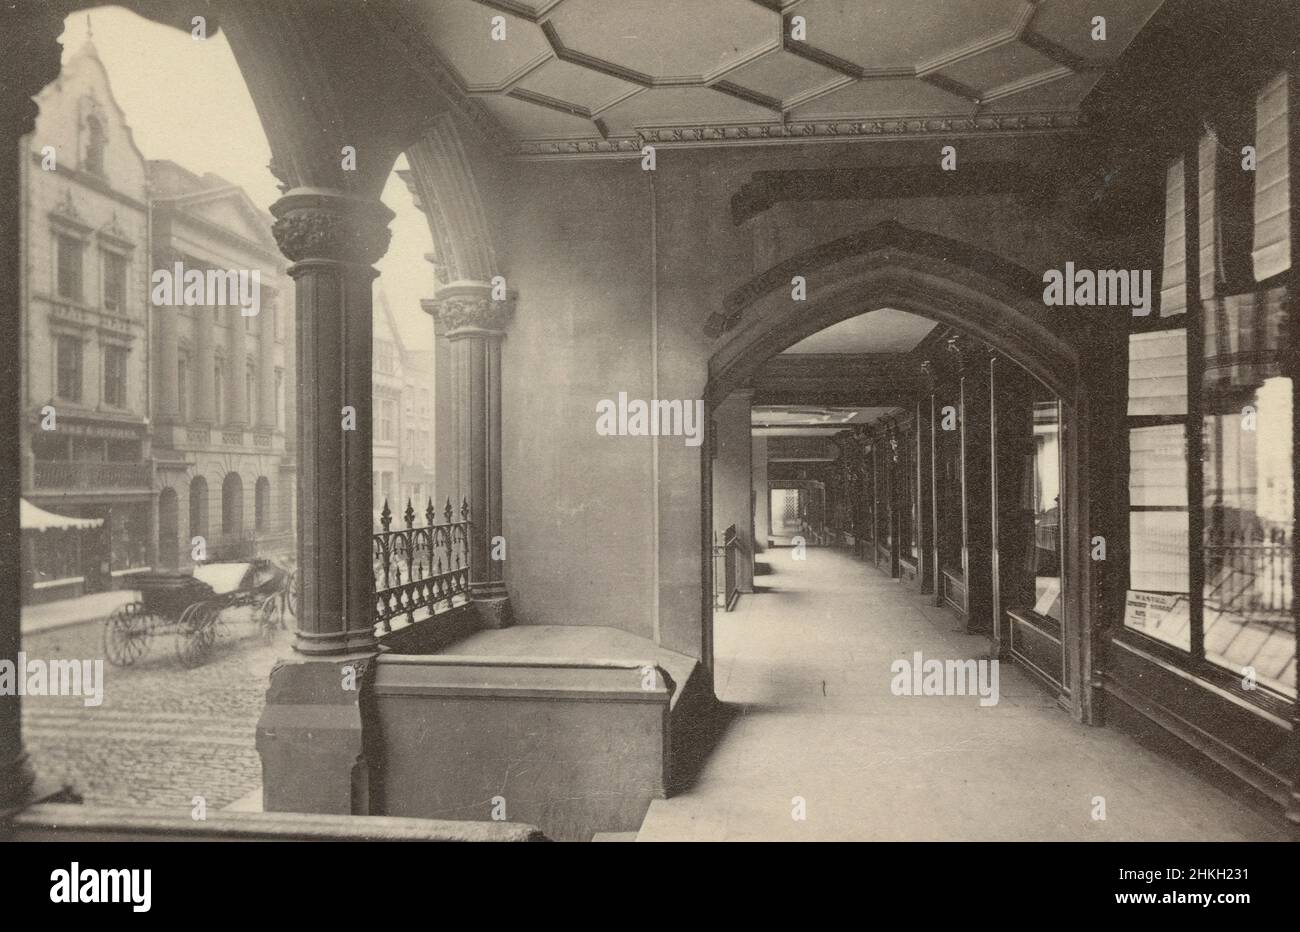 Fotografía antigua de alrededor de 1890 del centro del arco y la acera en Eastgate Street cerca del reloj y el arco en Chester, Inglaterra. FUENTE: FOTOGRAFÍA ORIGINAL EN ALBUMEN Foto de stock